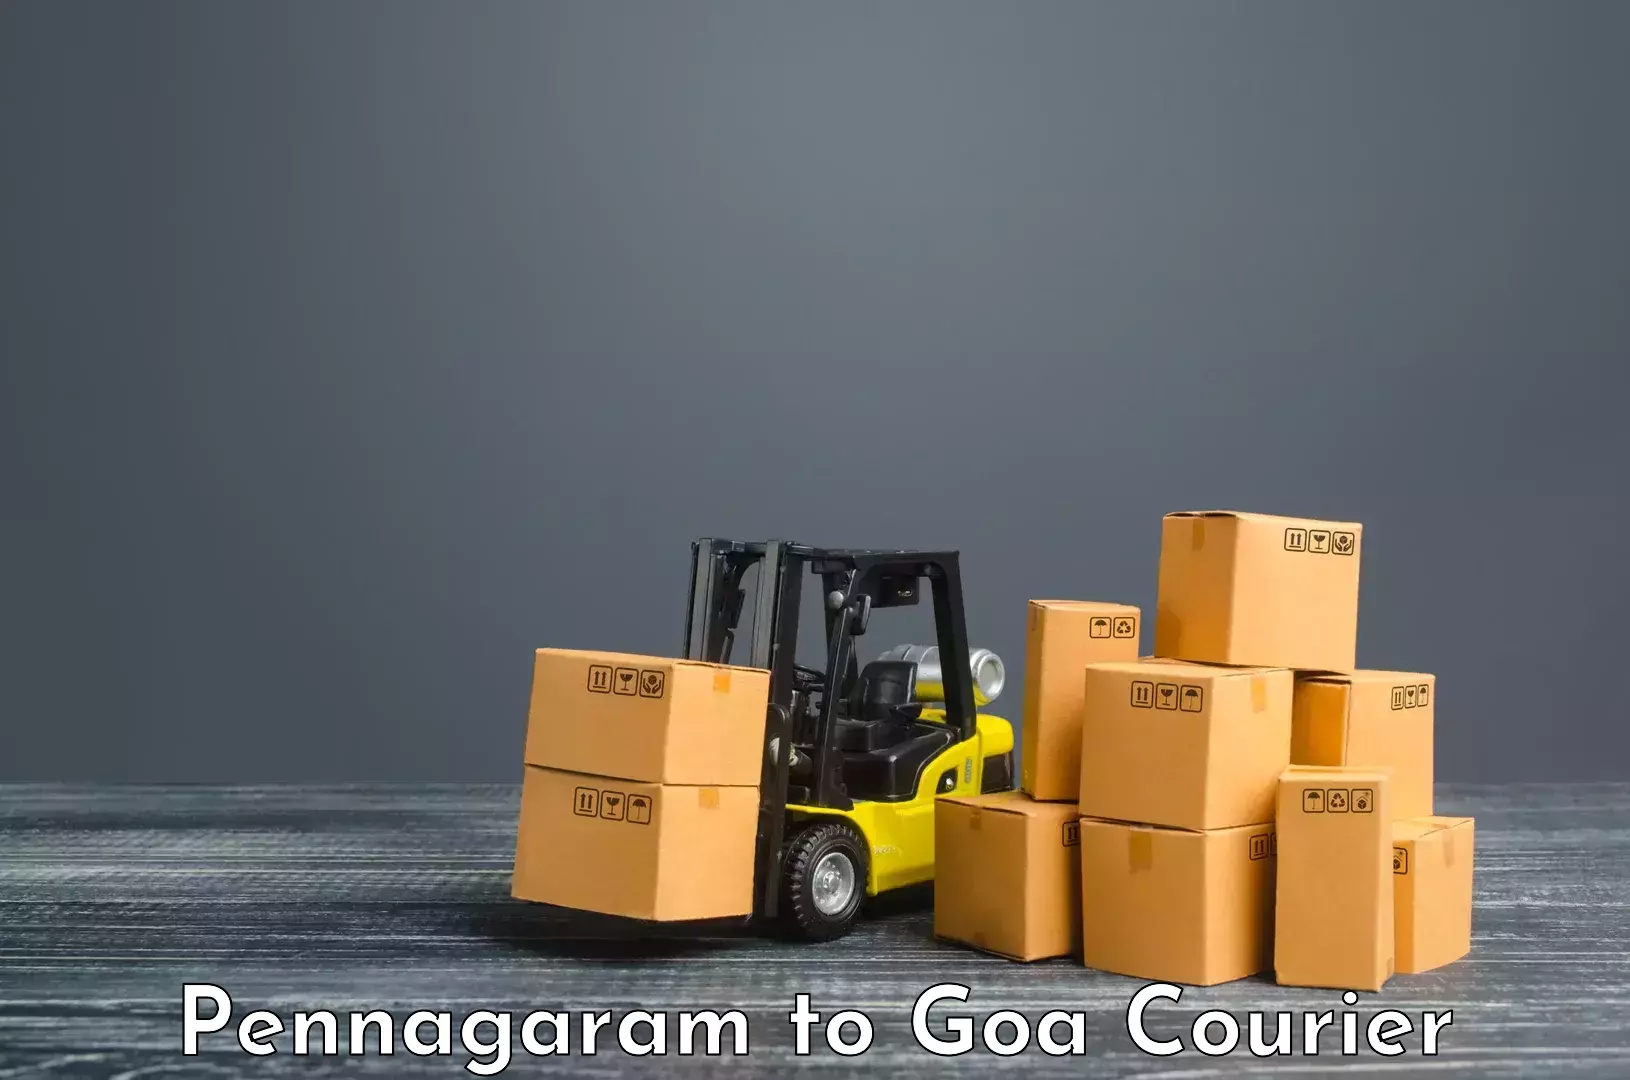 Seamless shipping service Pennagaram to Vasco da Gama